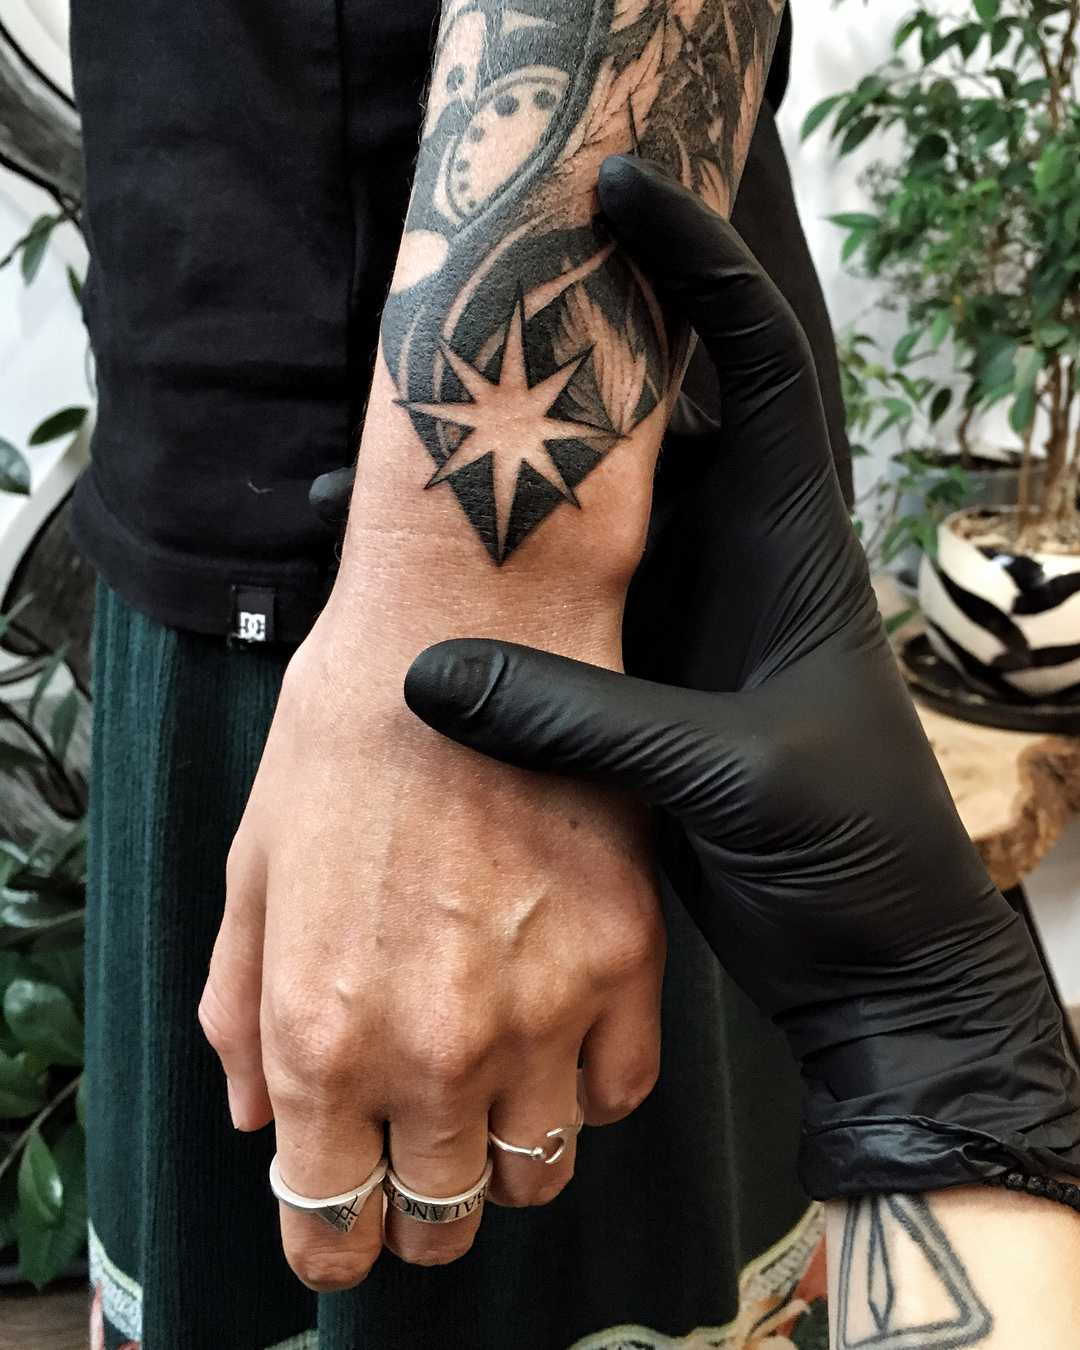 North Star tattoo on the wrist